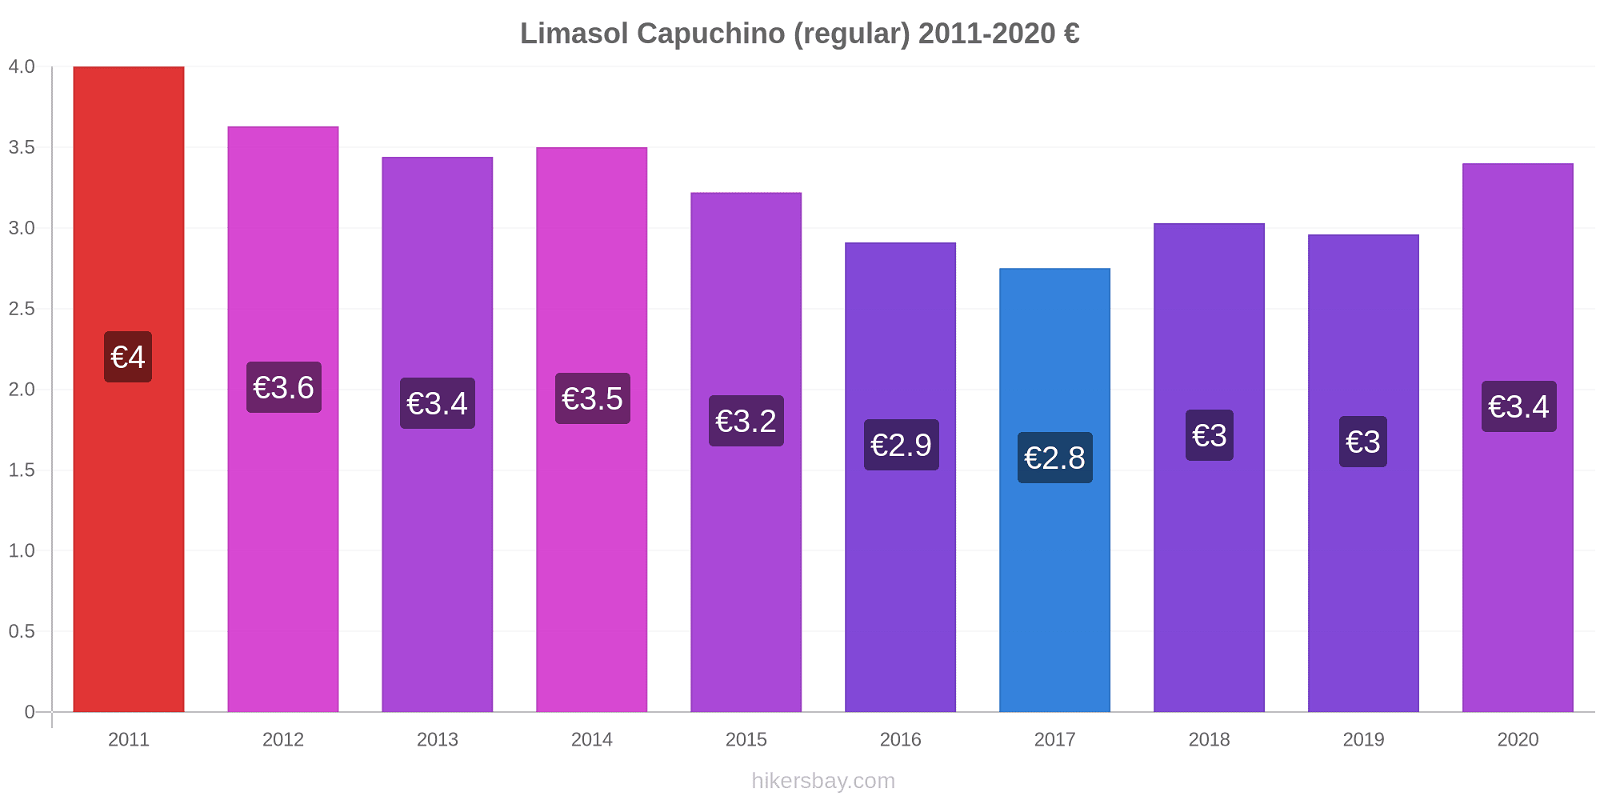 Limasol cambios de precios Capuchino (regular) hikersbay.com